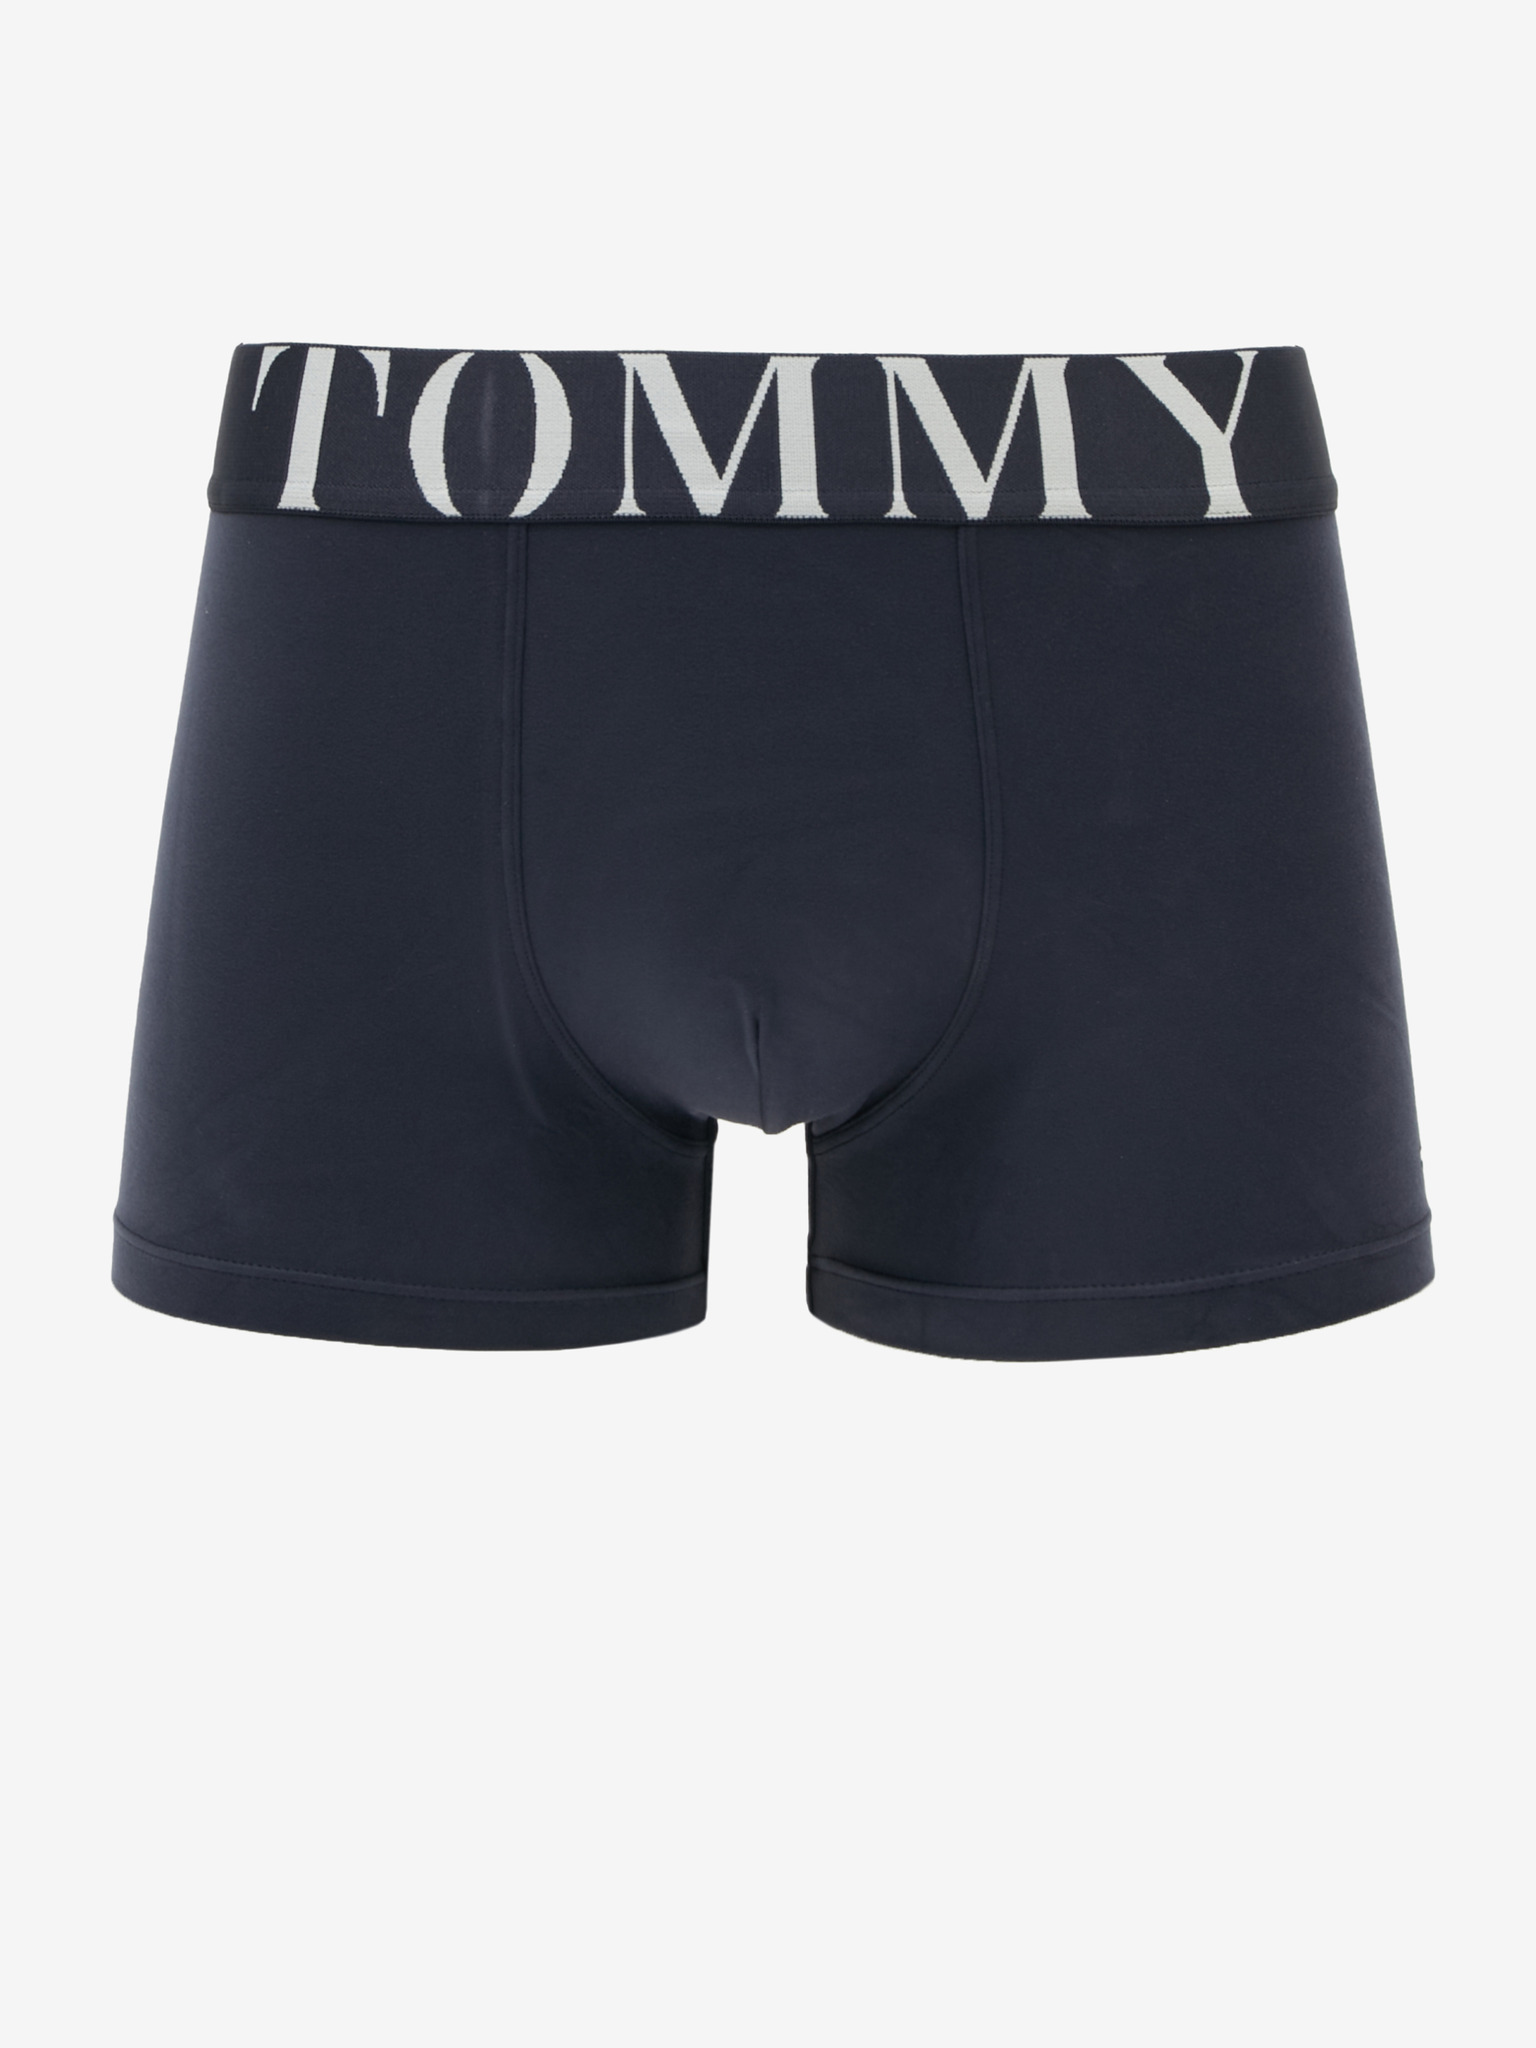 Tommy Hilfiger Underwear, Briefs, Trunks & Boxers